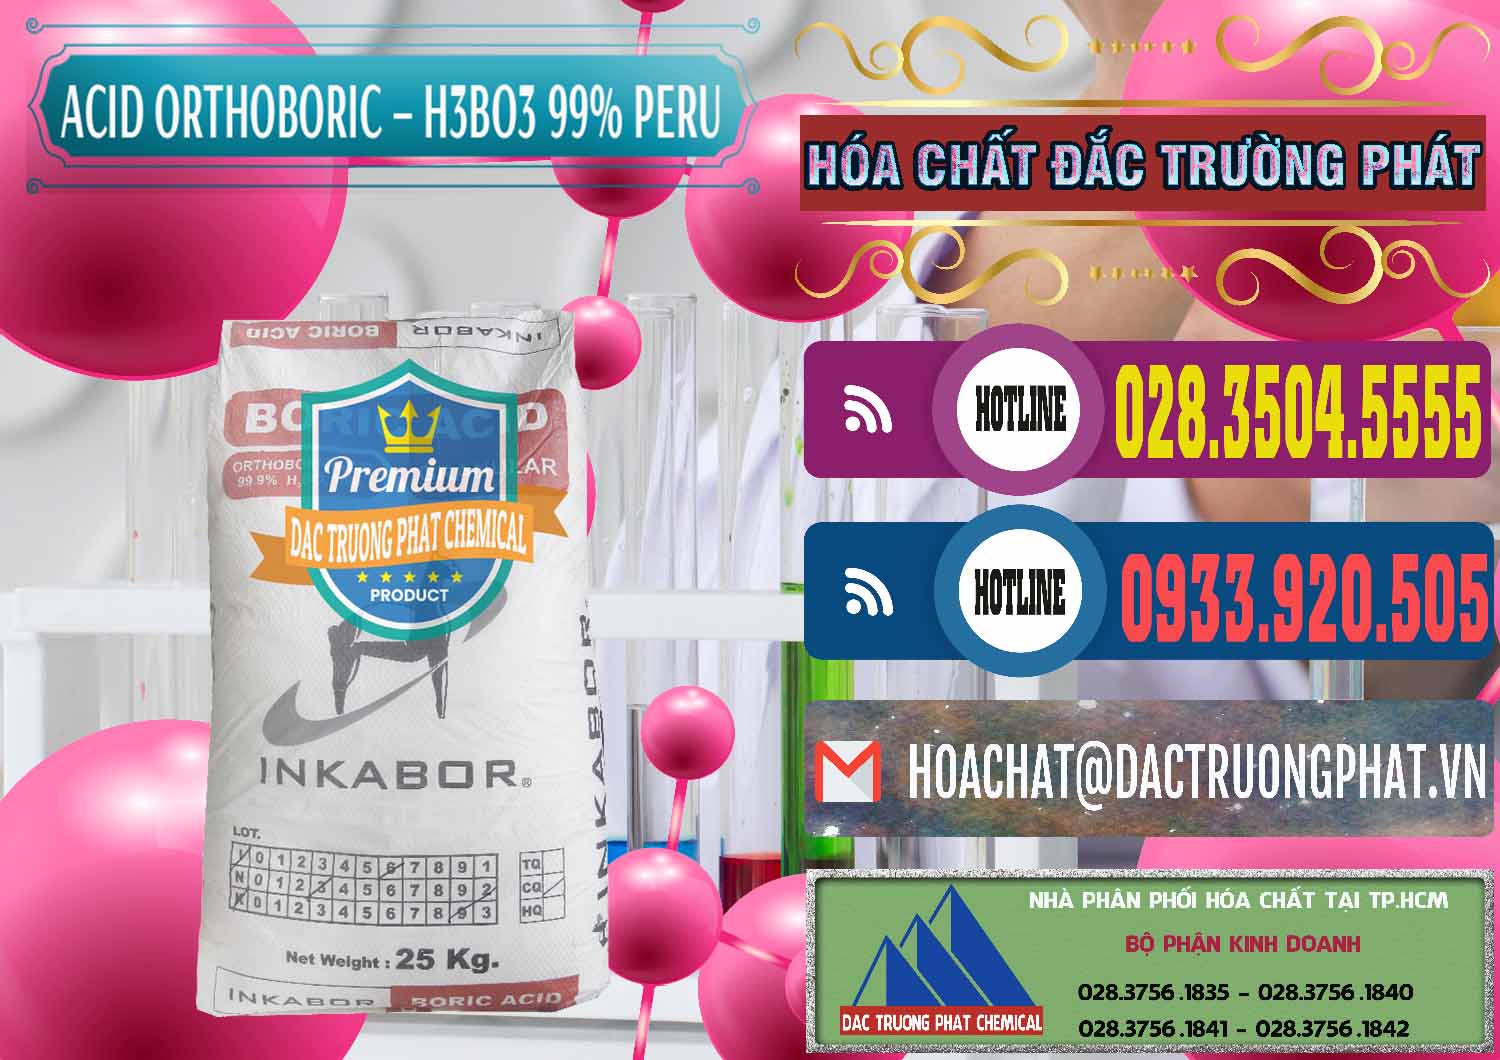 Công ty chuyên bán & cung ứng Acid Boric – Axit Boric H3BO3 99% Inkabor Peru - 0280 - Cty chuyên cung cấp và bán hóa chất tại TP.HCM - muabanhoachat.com.vn